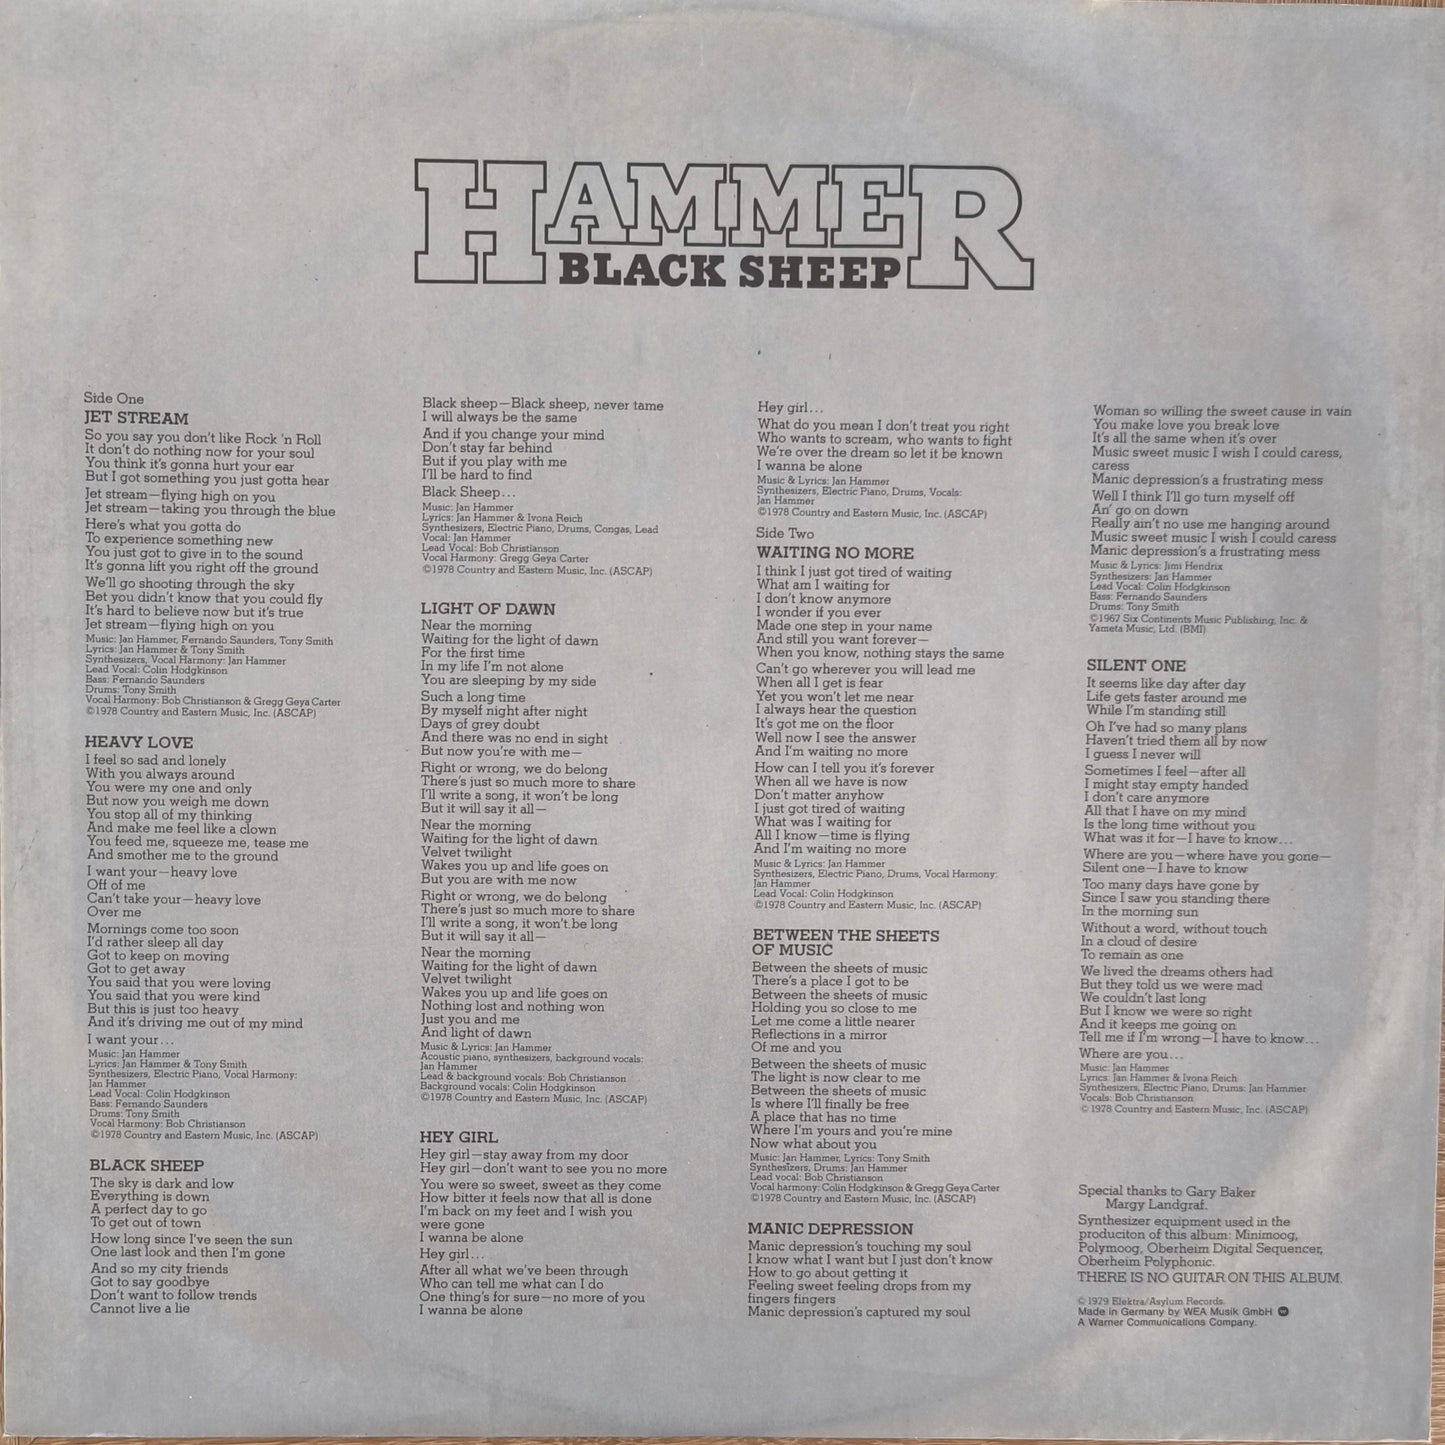 JAN HAMMER - Black Sheep